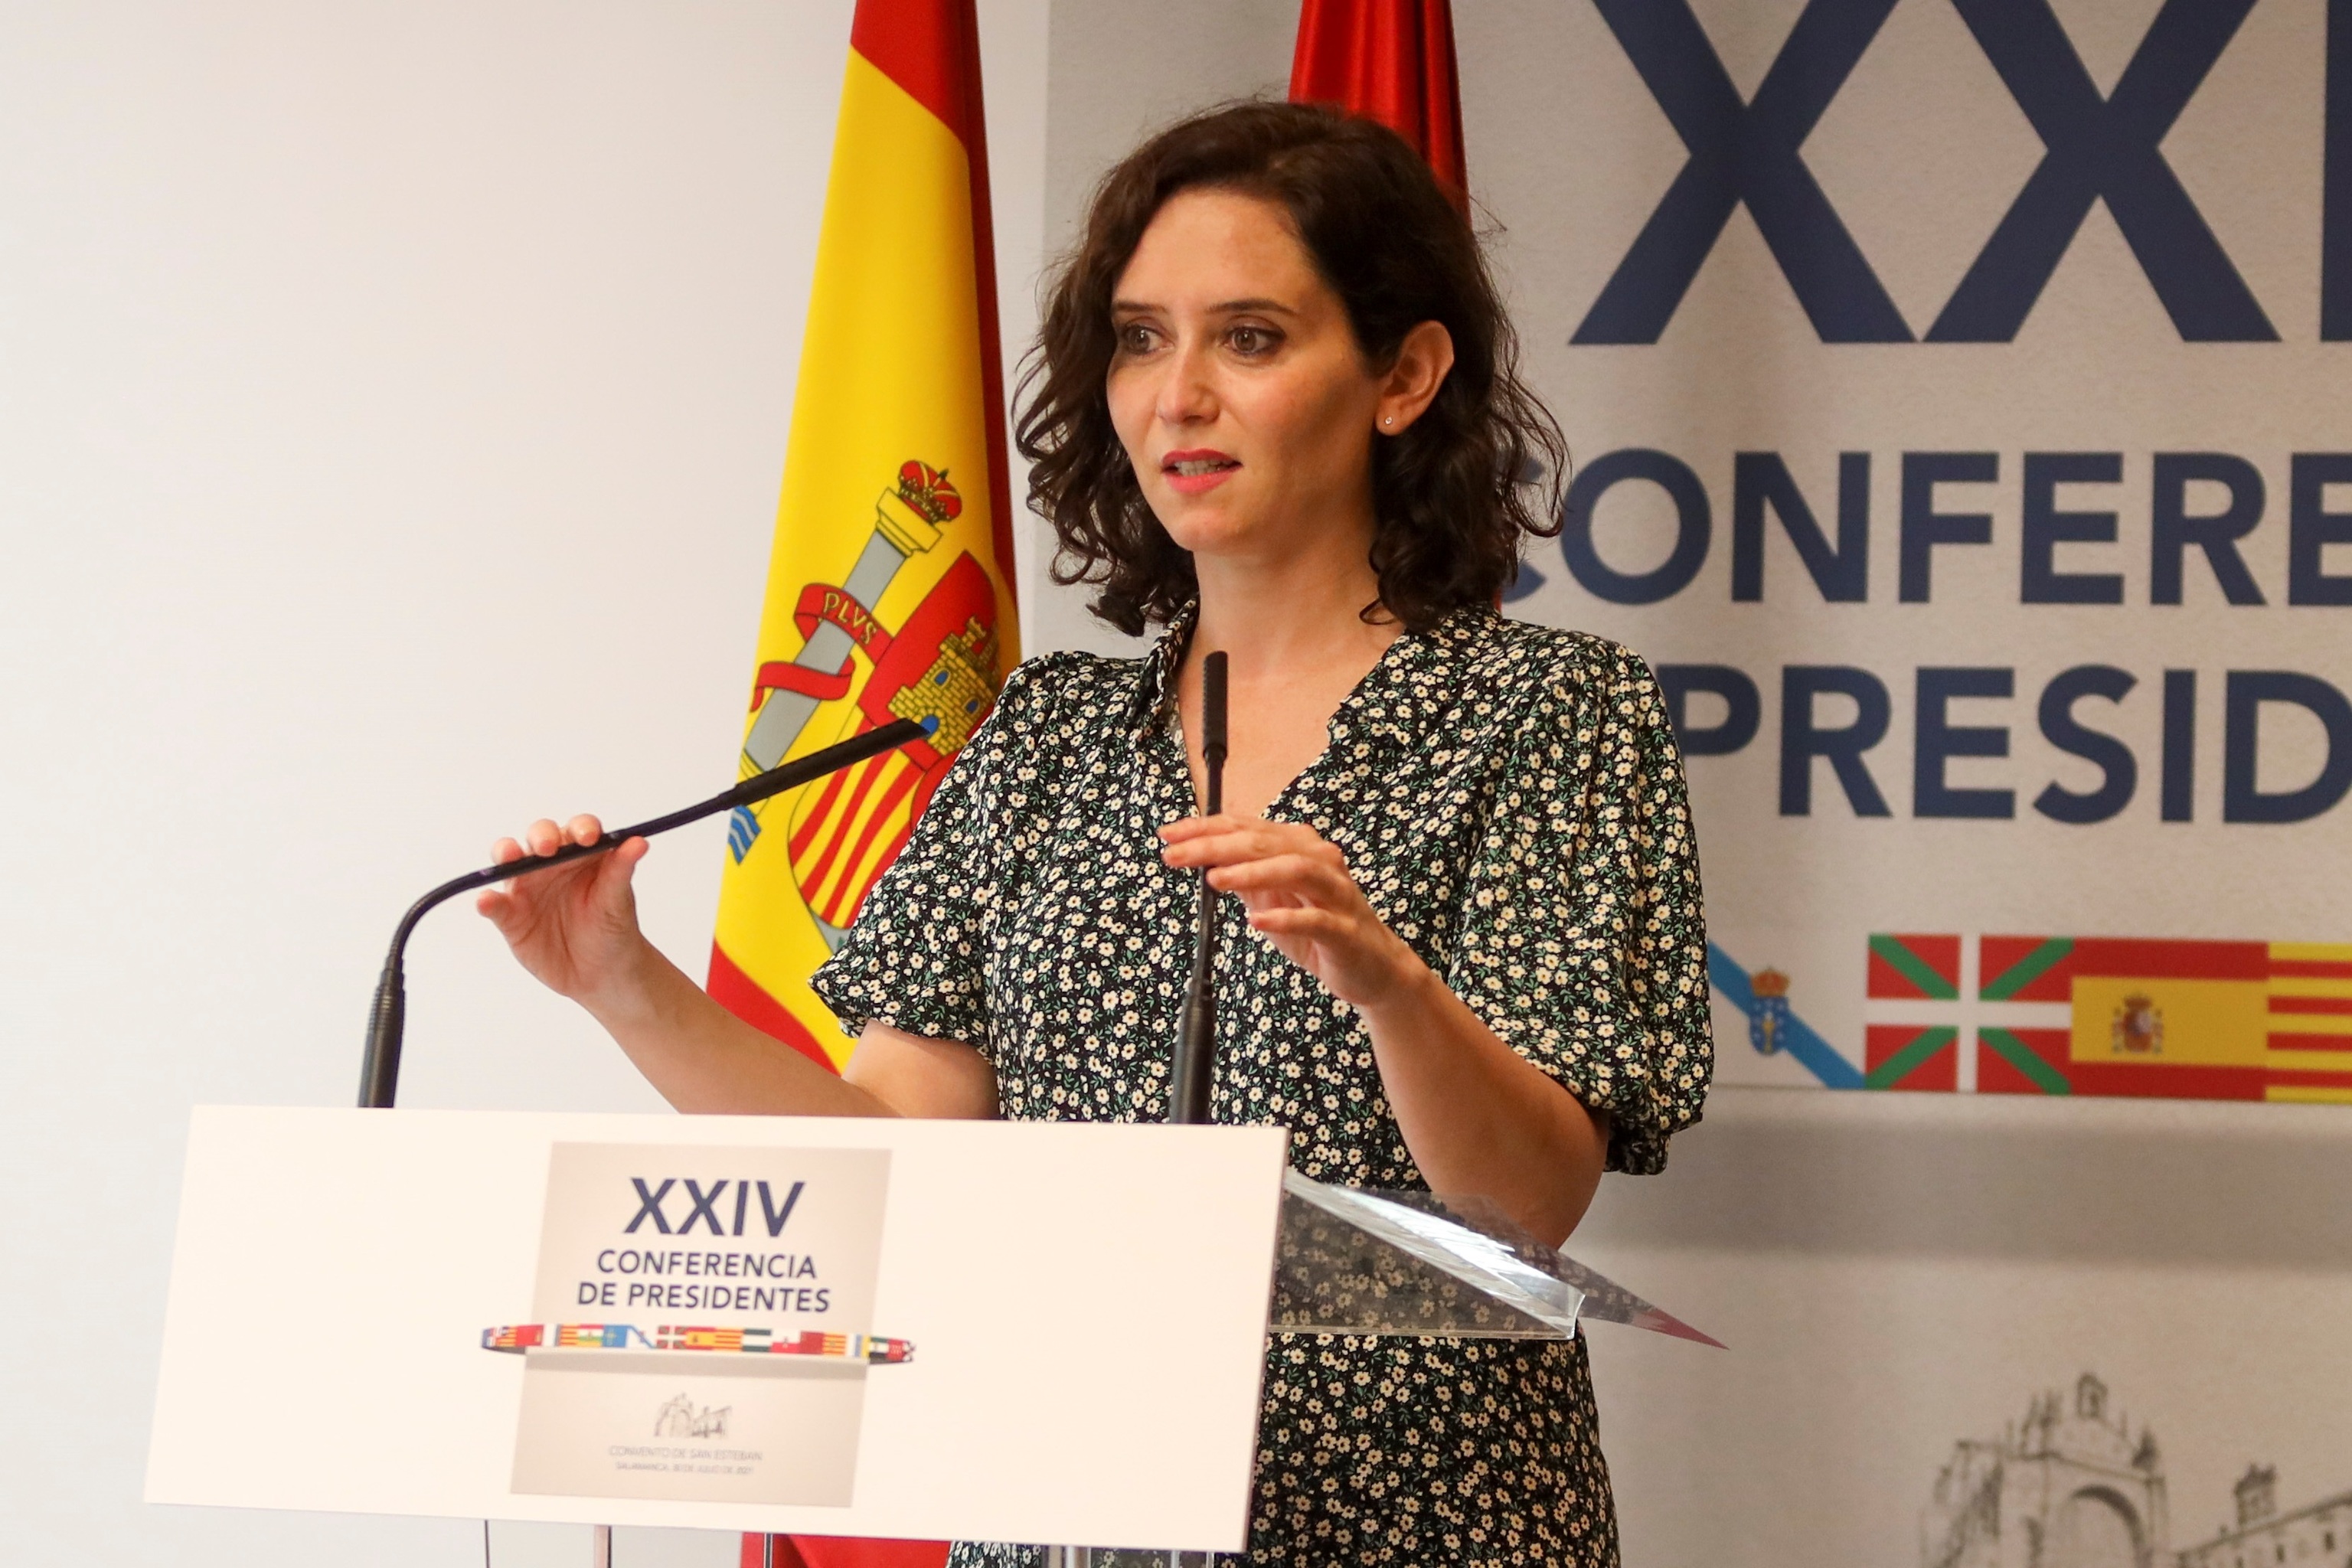 La presidenta de la Comunidad de Madrid, Isabel Daz Ayuso, en la XXIV Conferencia de Presidentes del pasado julio.